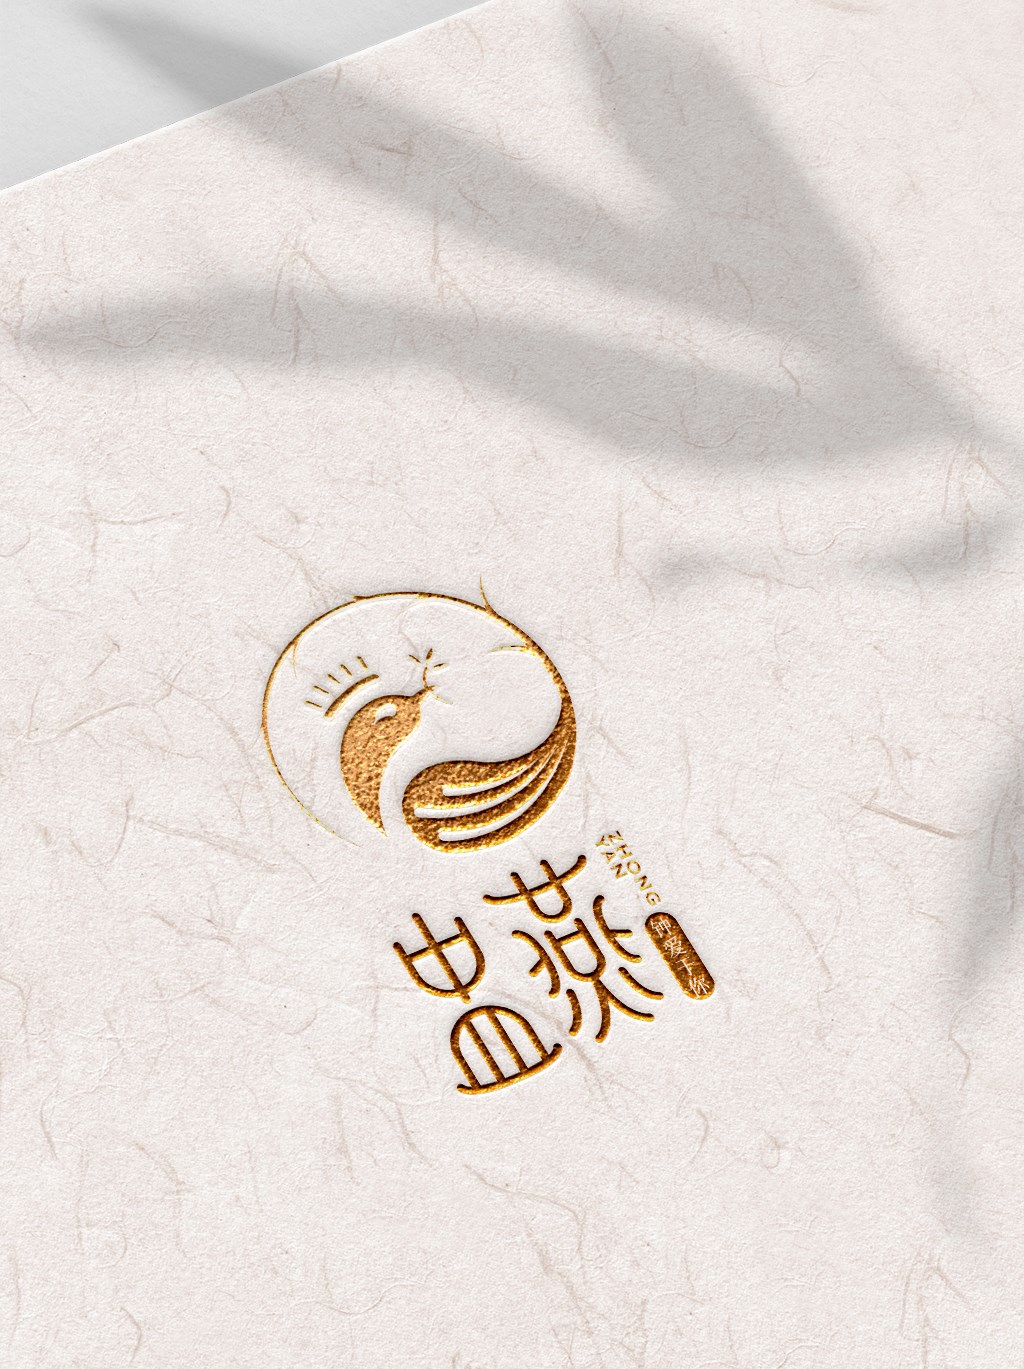 慧设计｜盅燕logo 包装设计